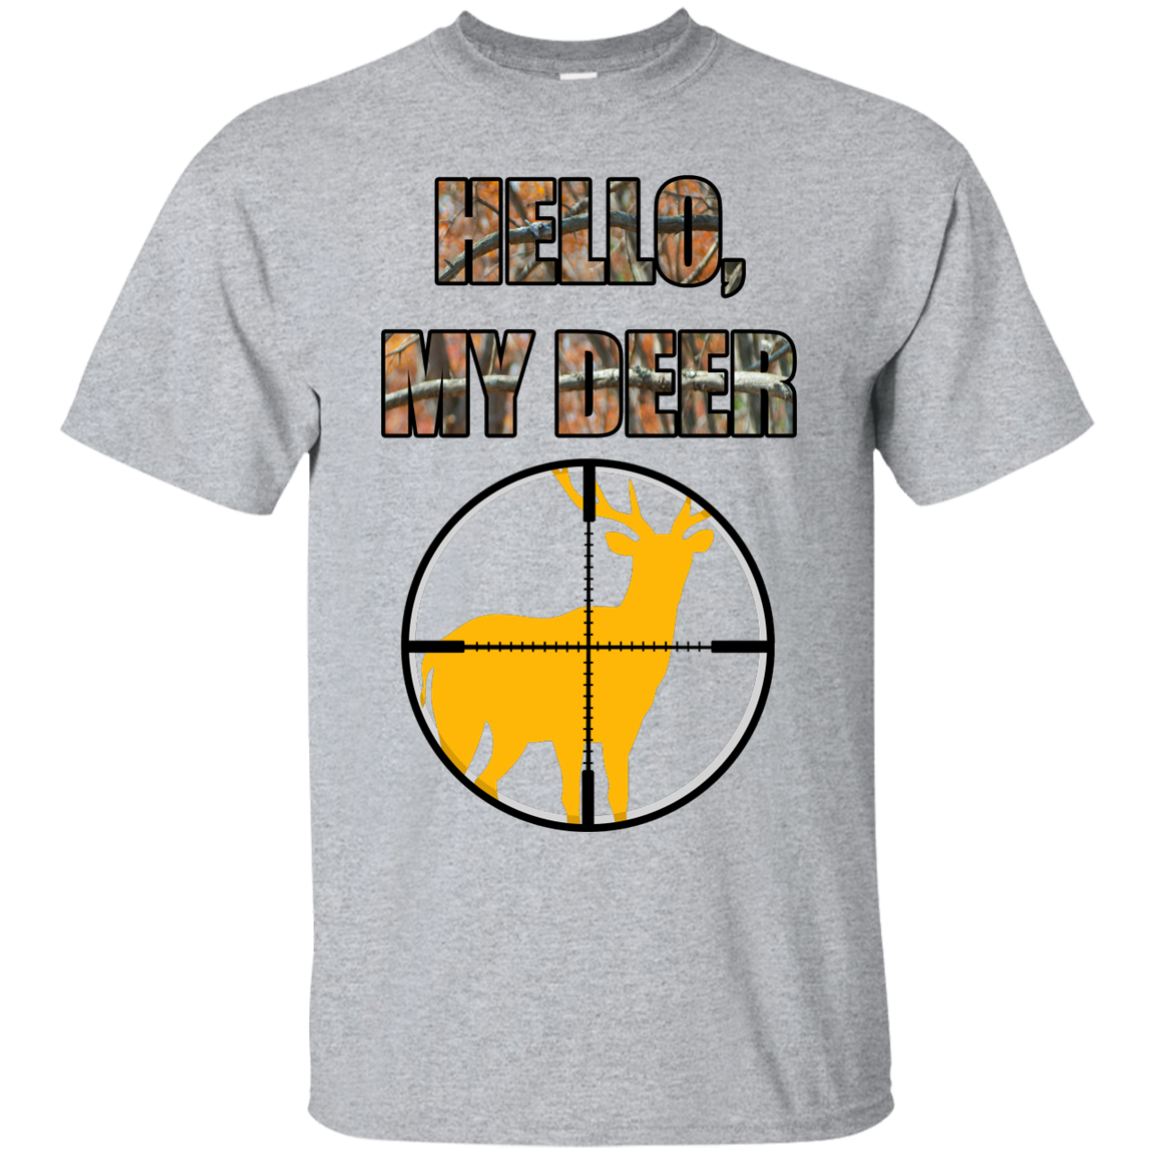 "Hello, My Deer" Custom Ultra Cotton T-Shirt